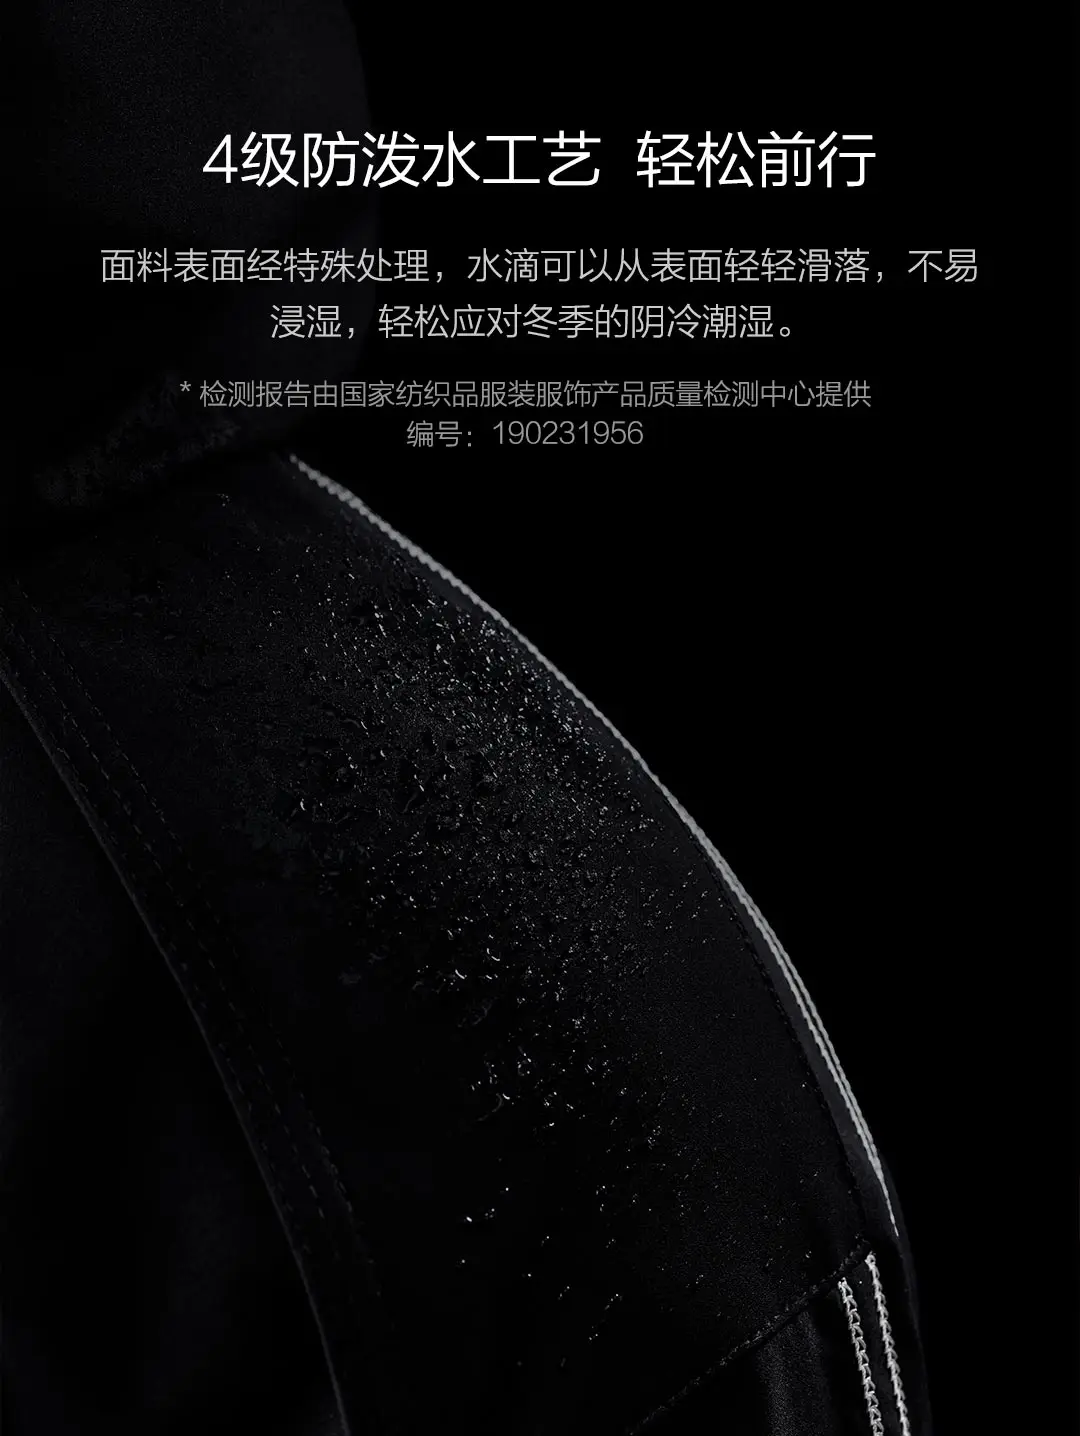 Xiaomi Mijia Youpin 90 points трехмерная вышивка с капюшоном пуховик уровень 4 водоотталкивающий для зимы